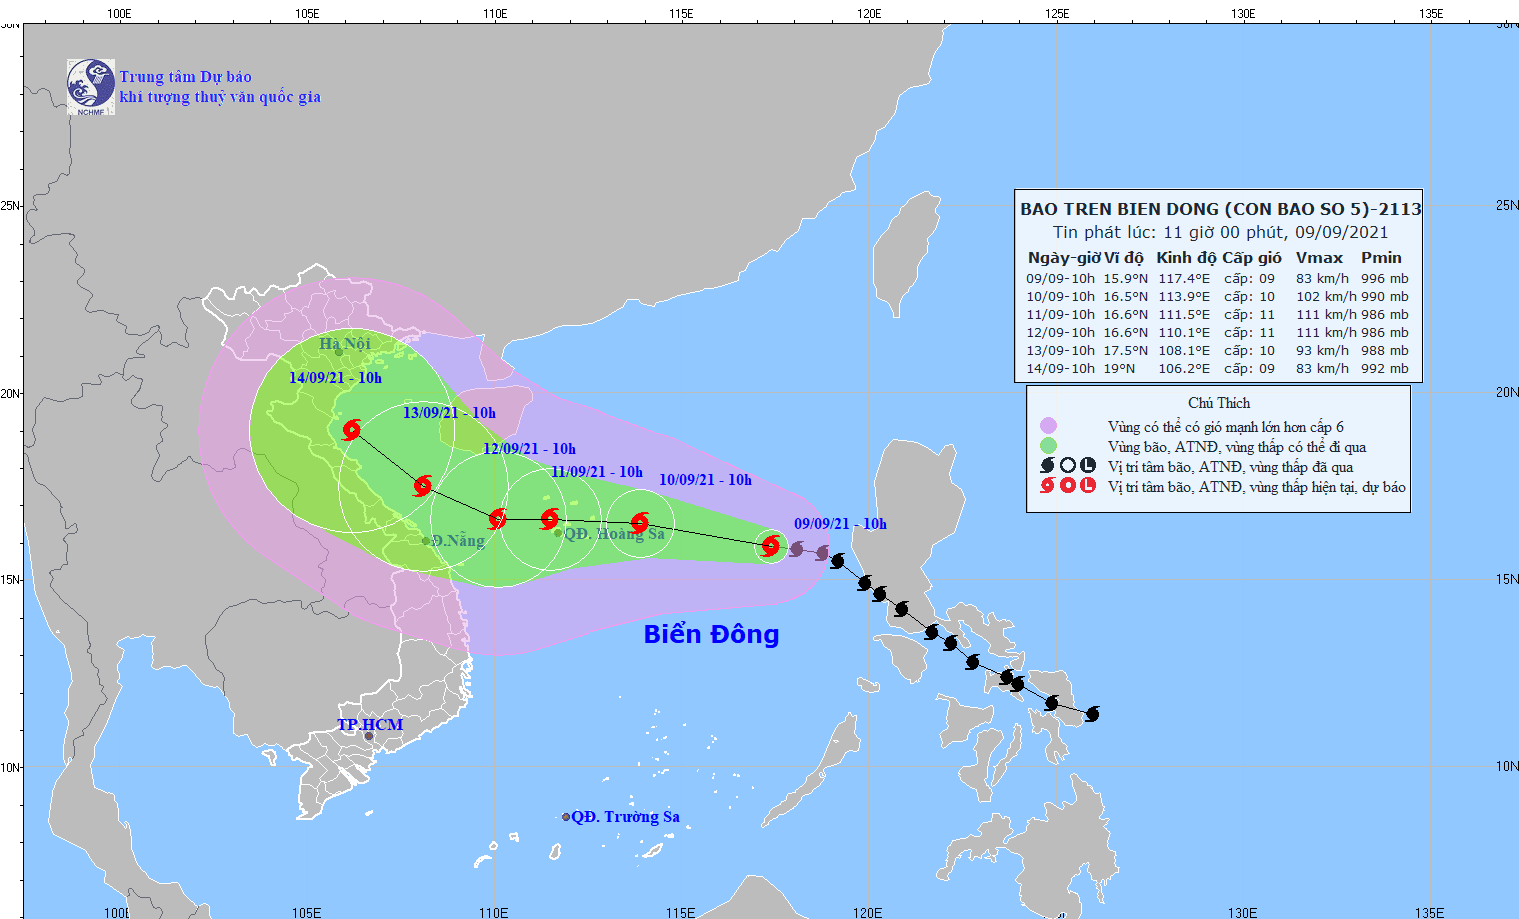 Bão số 5 chịu tác động bởi cơn bão mạnh Chanthu nên quỹ đạo và cường độ rất khó dự báo